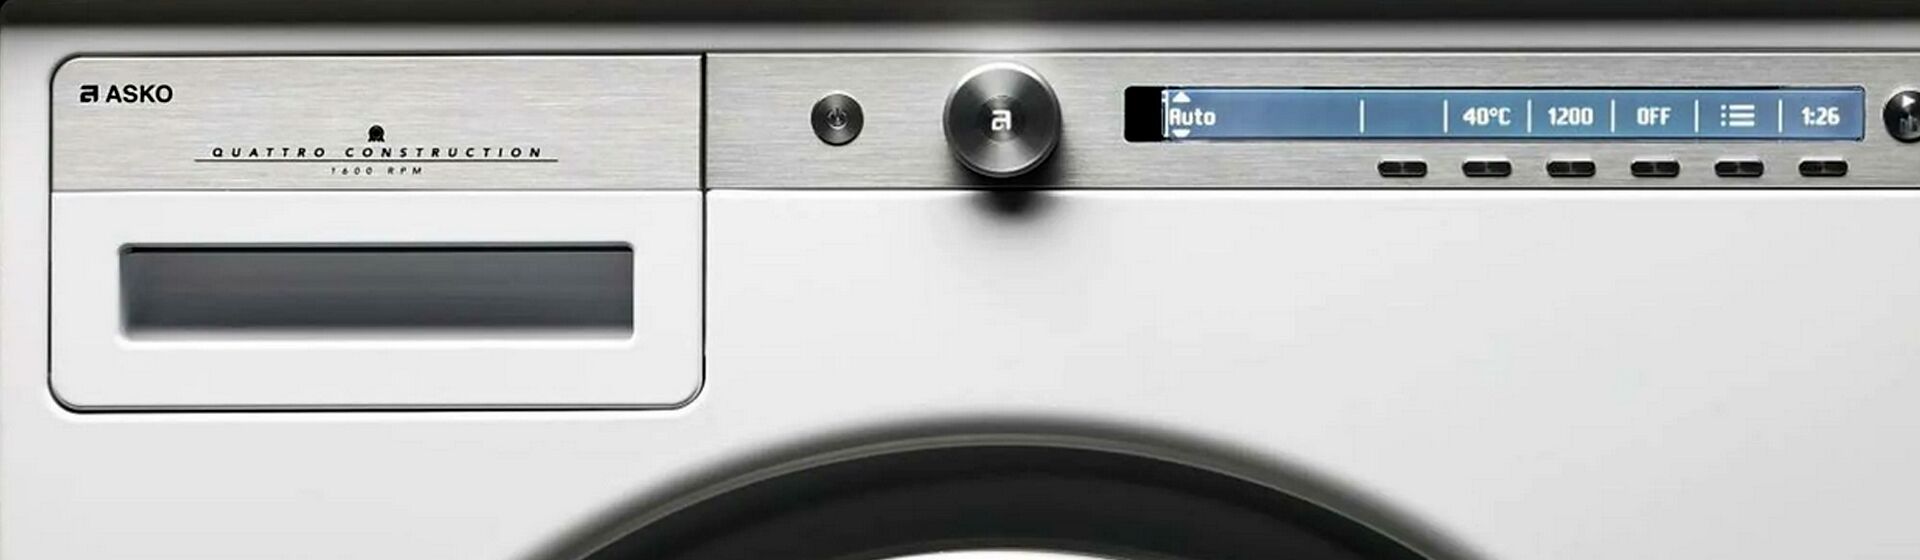 Как заменить датчик уровня воды стиральной машины